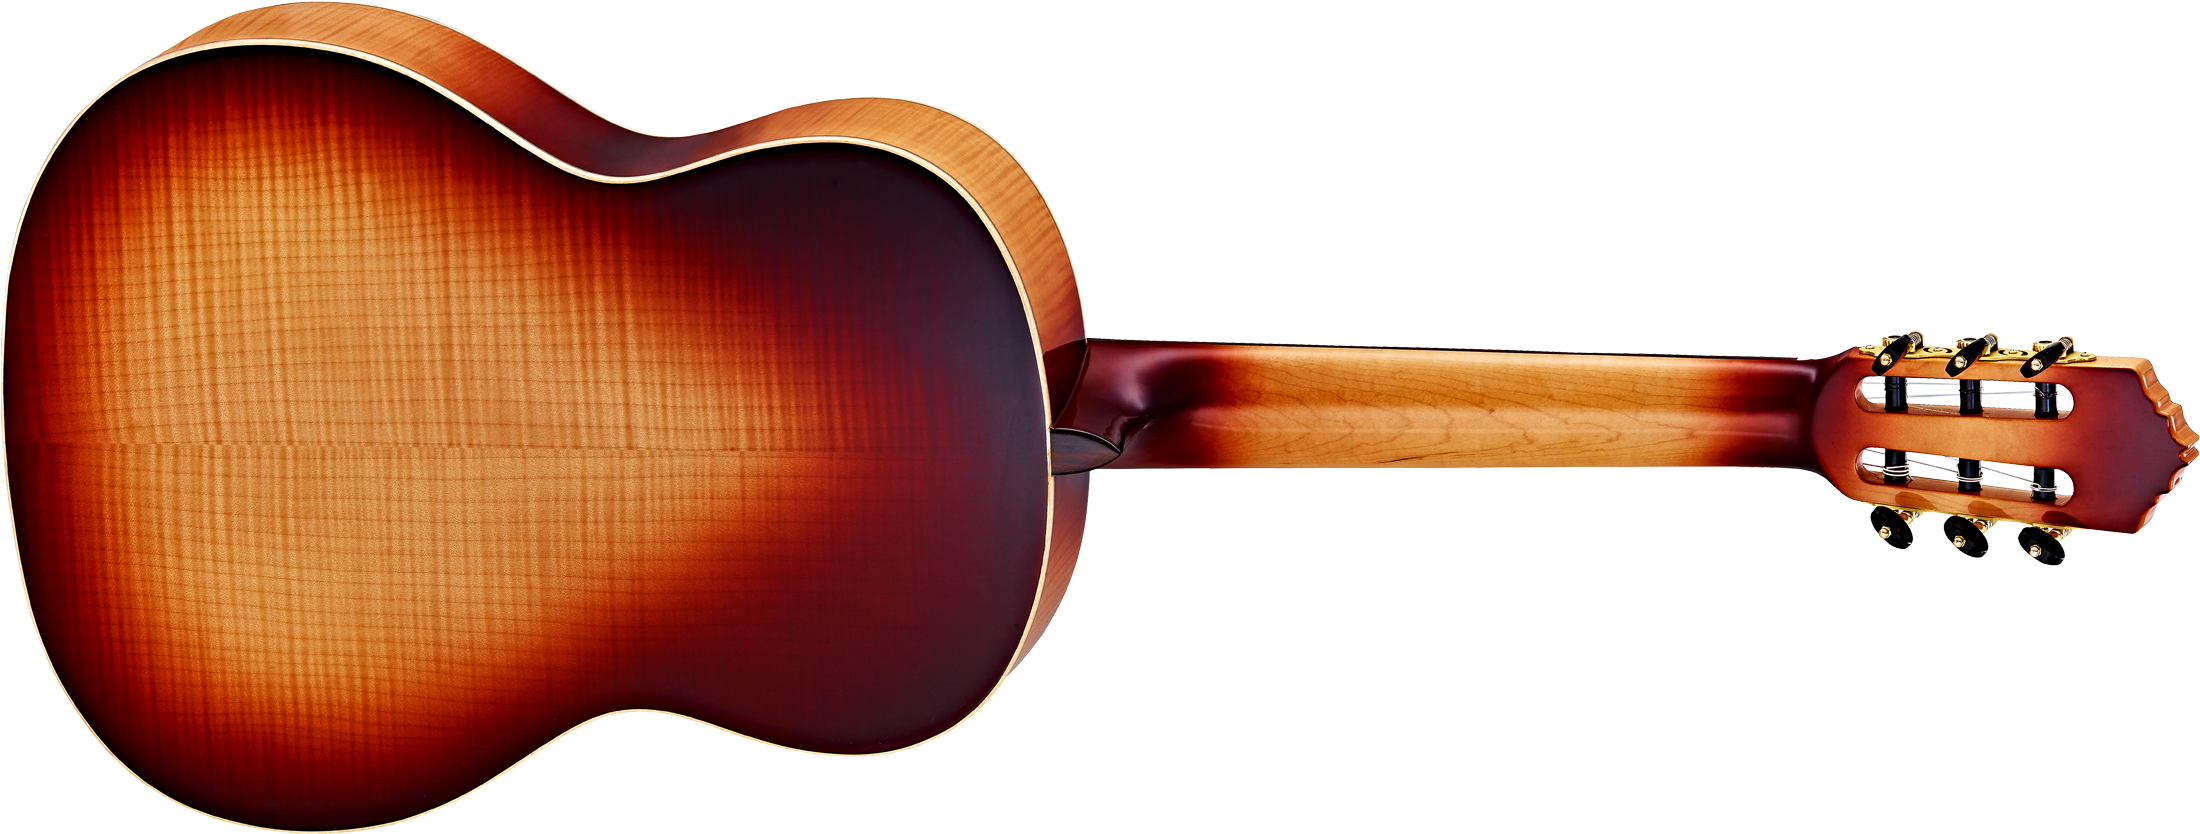 Honeysuite - Honeysuite - Share - Nylon String Guitars - Ortega Guitars Honeysuitec/e Nylon String Guitar (2500x1000)